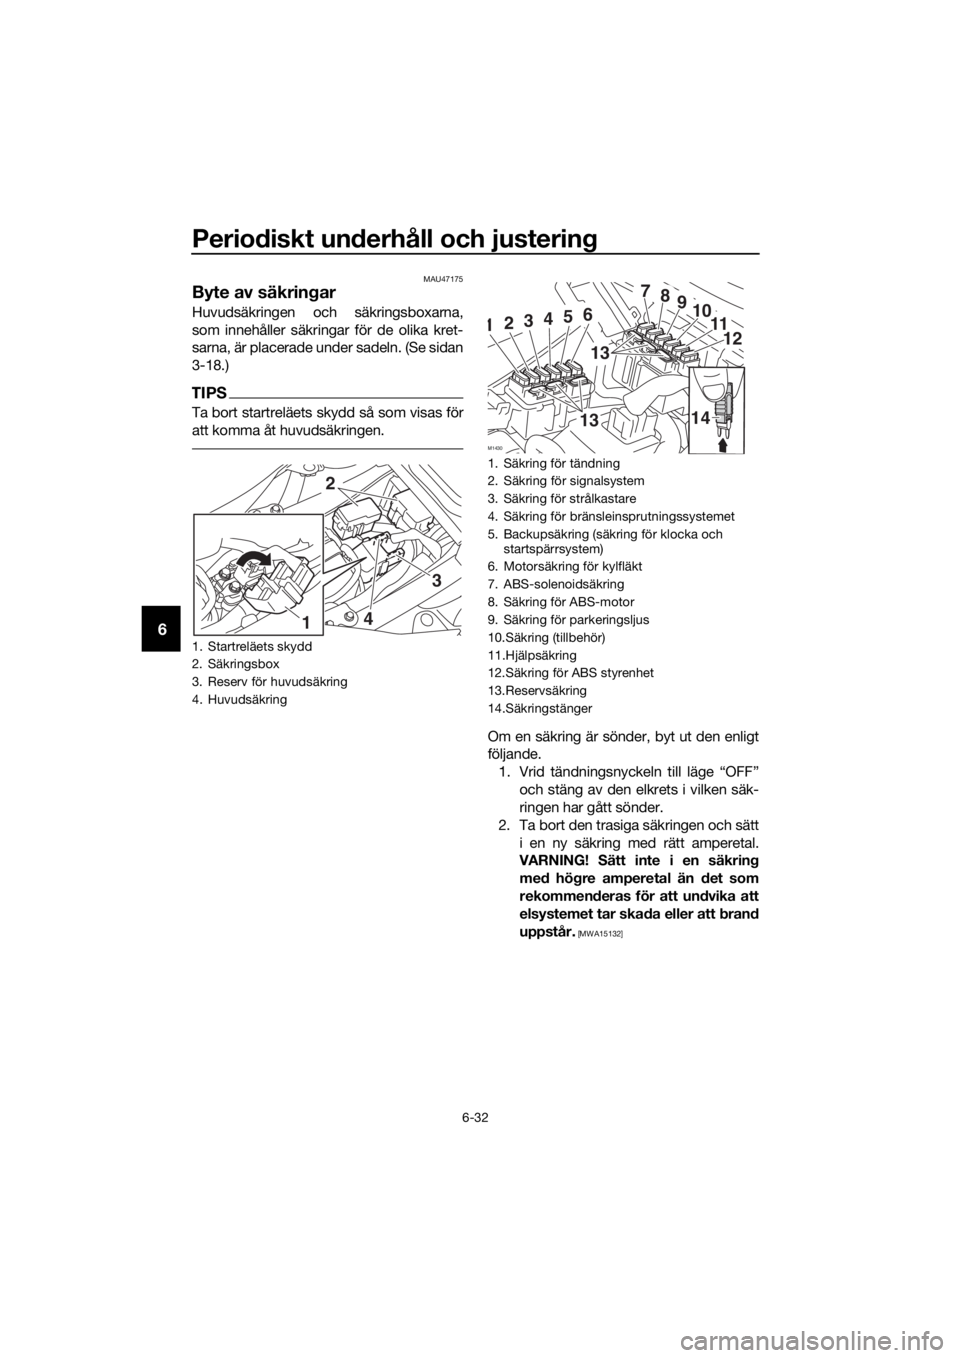 YAMAHA TRACER 700 2017  Bruksanvisningar (in Swedish) Periodiskt underhåll och justering
6-32
6
MAU47175
Byte av säkringar
Huvudsäkringen och säkringsboxarna,
som innehåller säkringar för de olika kret-
sarna, är placerade under sadeln. (Se sidan